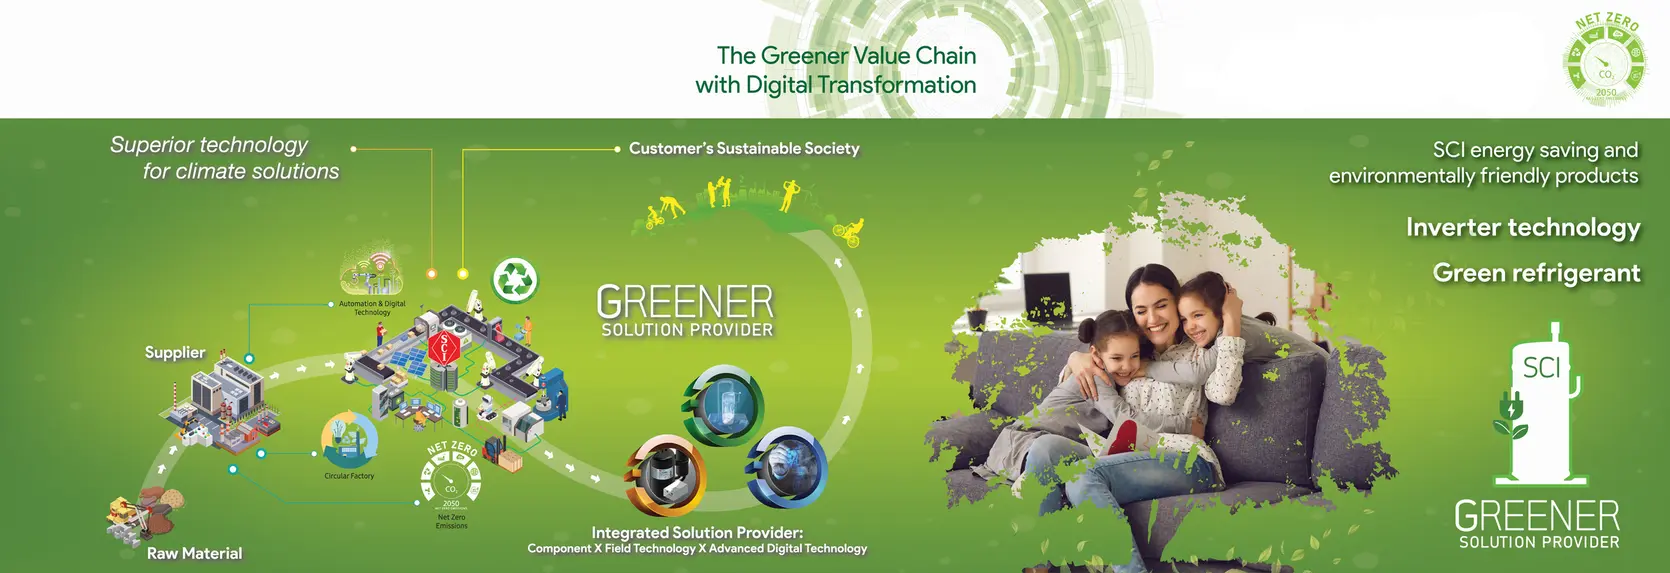 greener solution provider